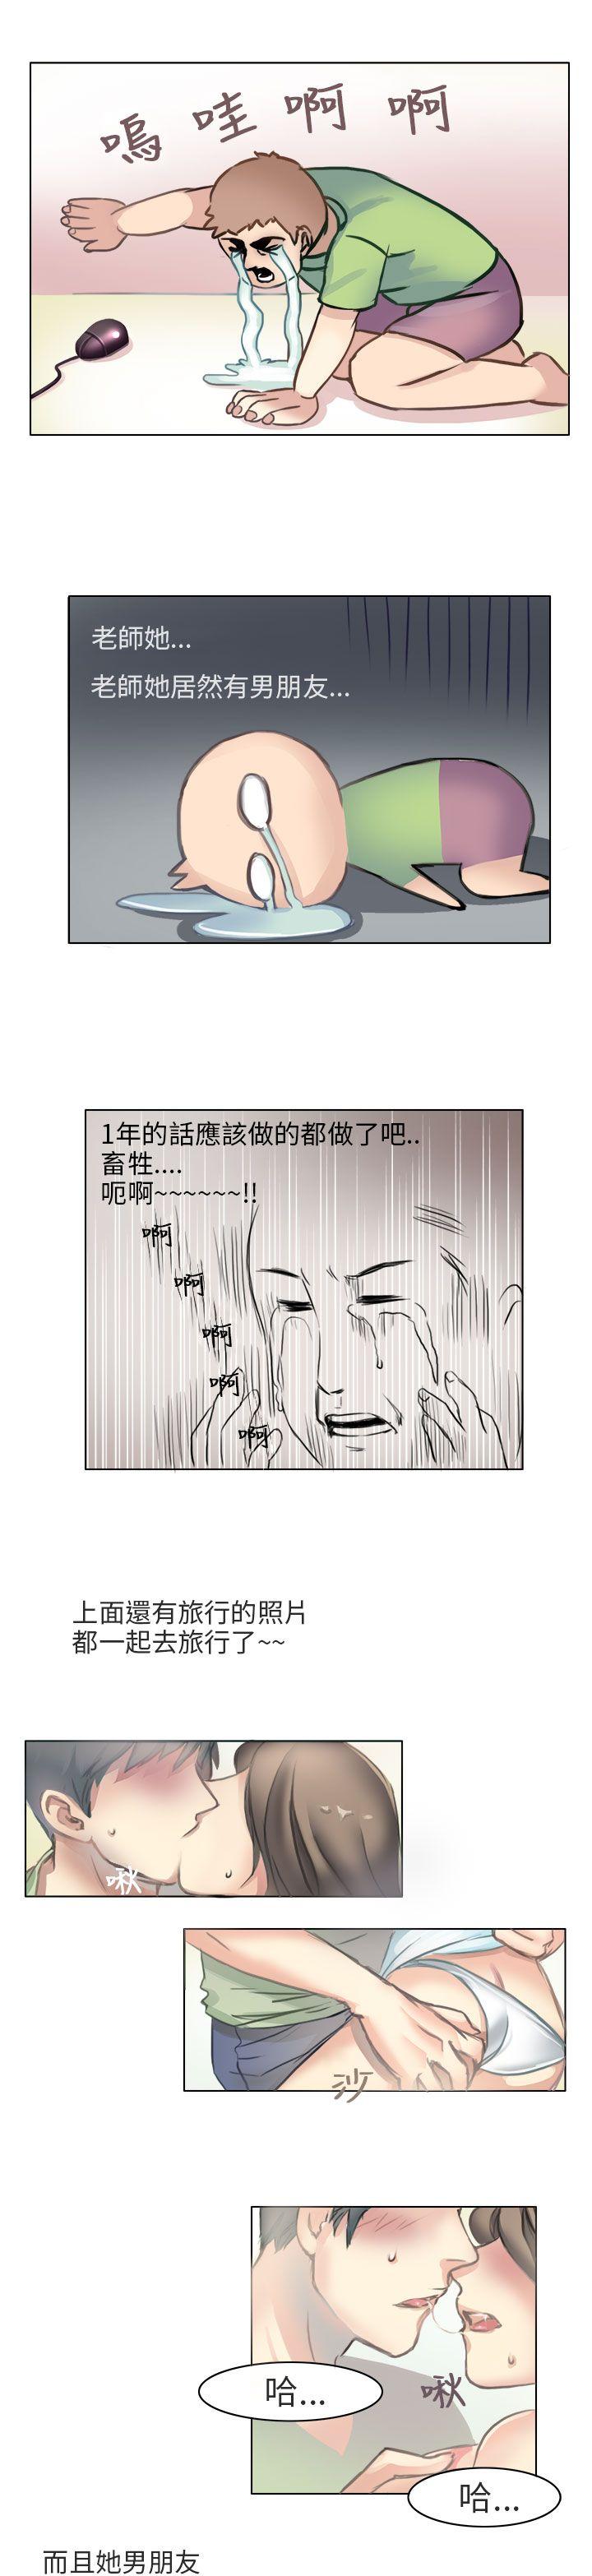 韩国污漫画 秘密Story第二季 与老师的再次相遇(中) 9